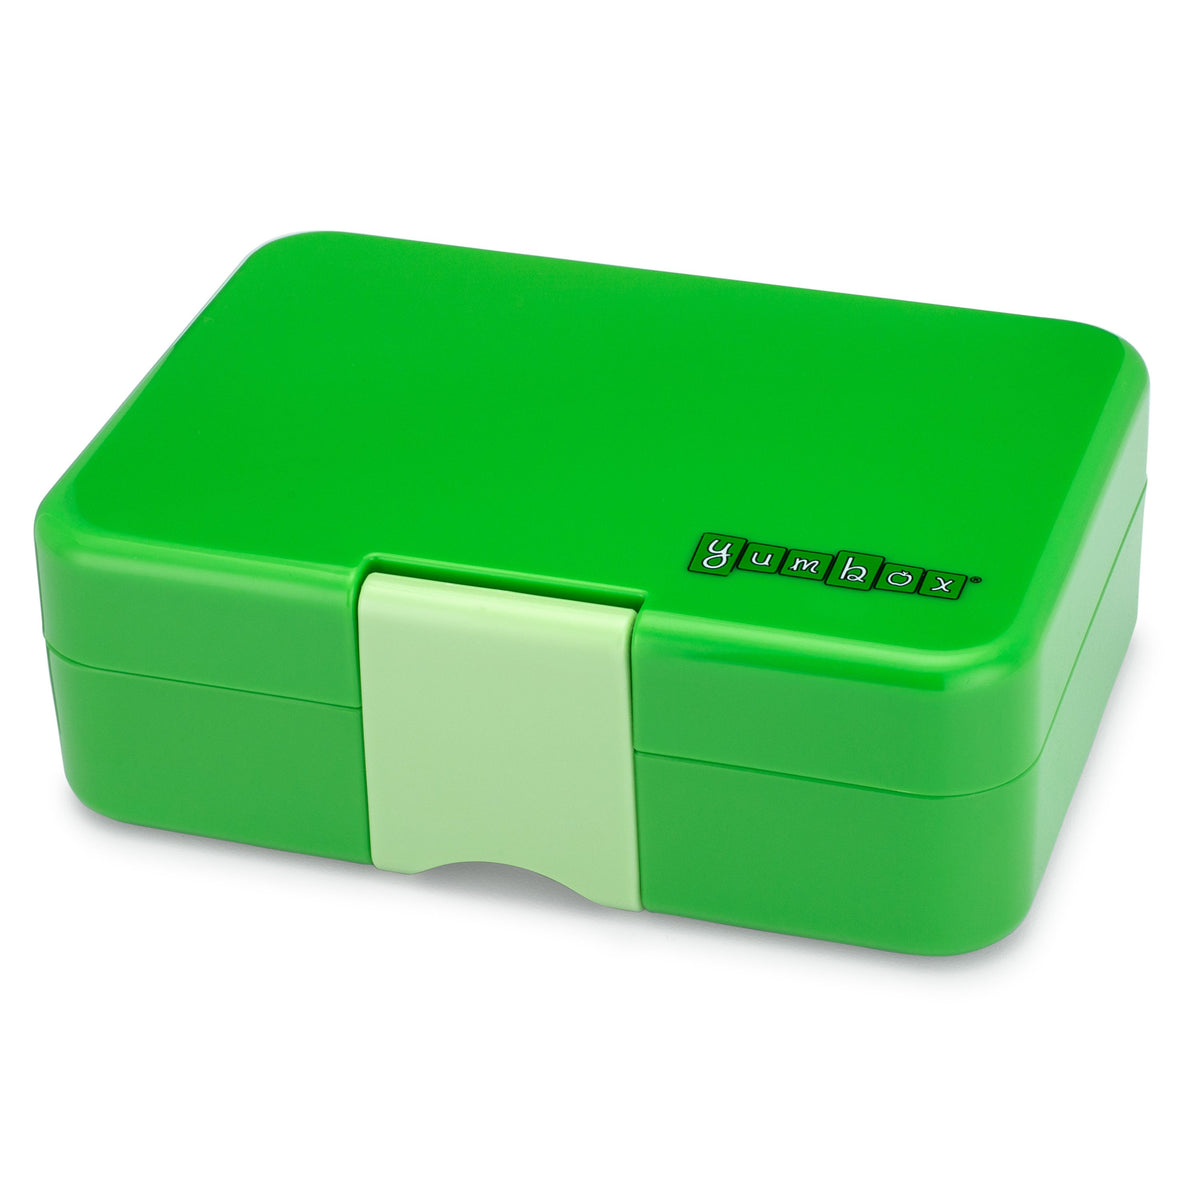 yumbox-mini-snack-cilantro-green-3-compartment-lunch-box- (1)